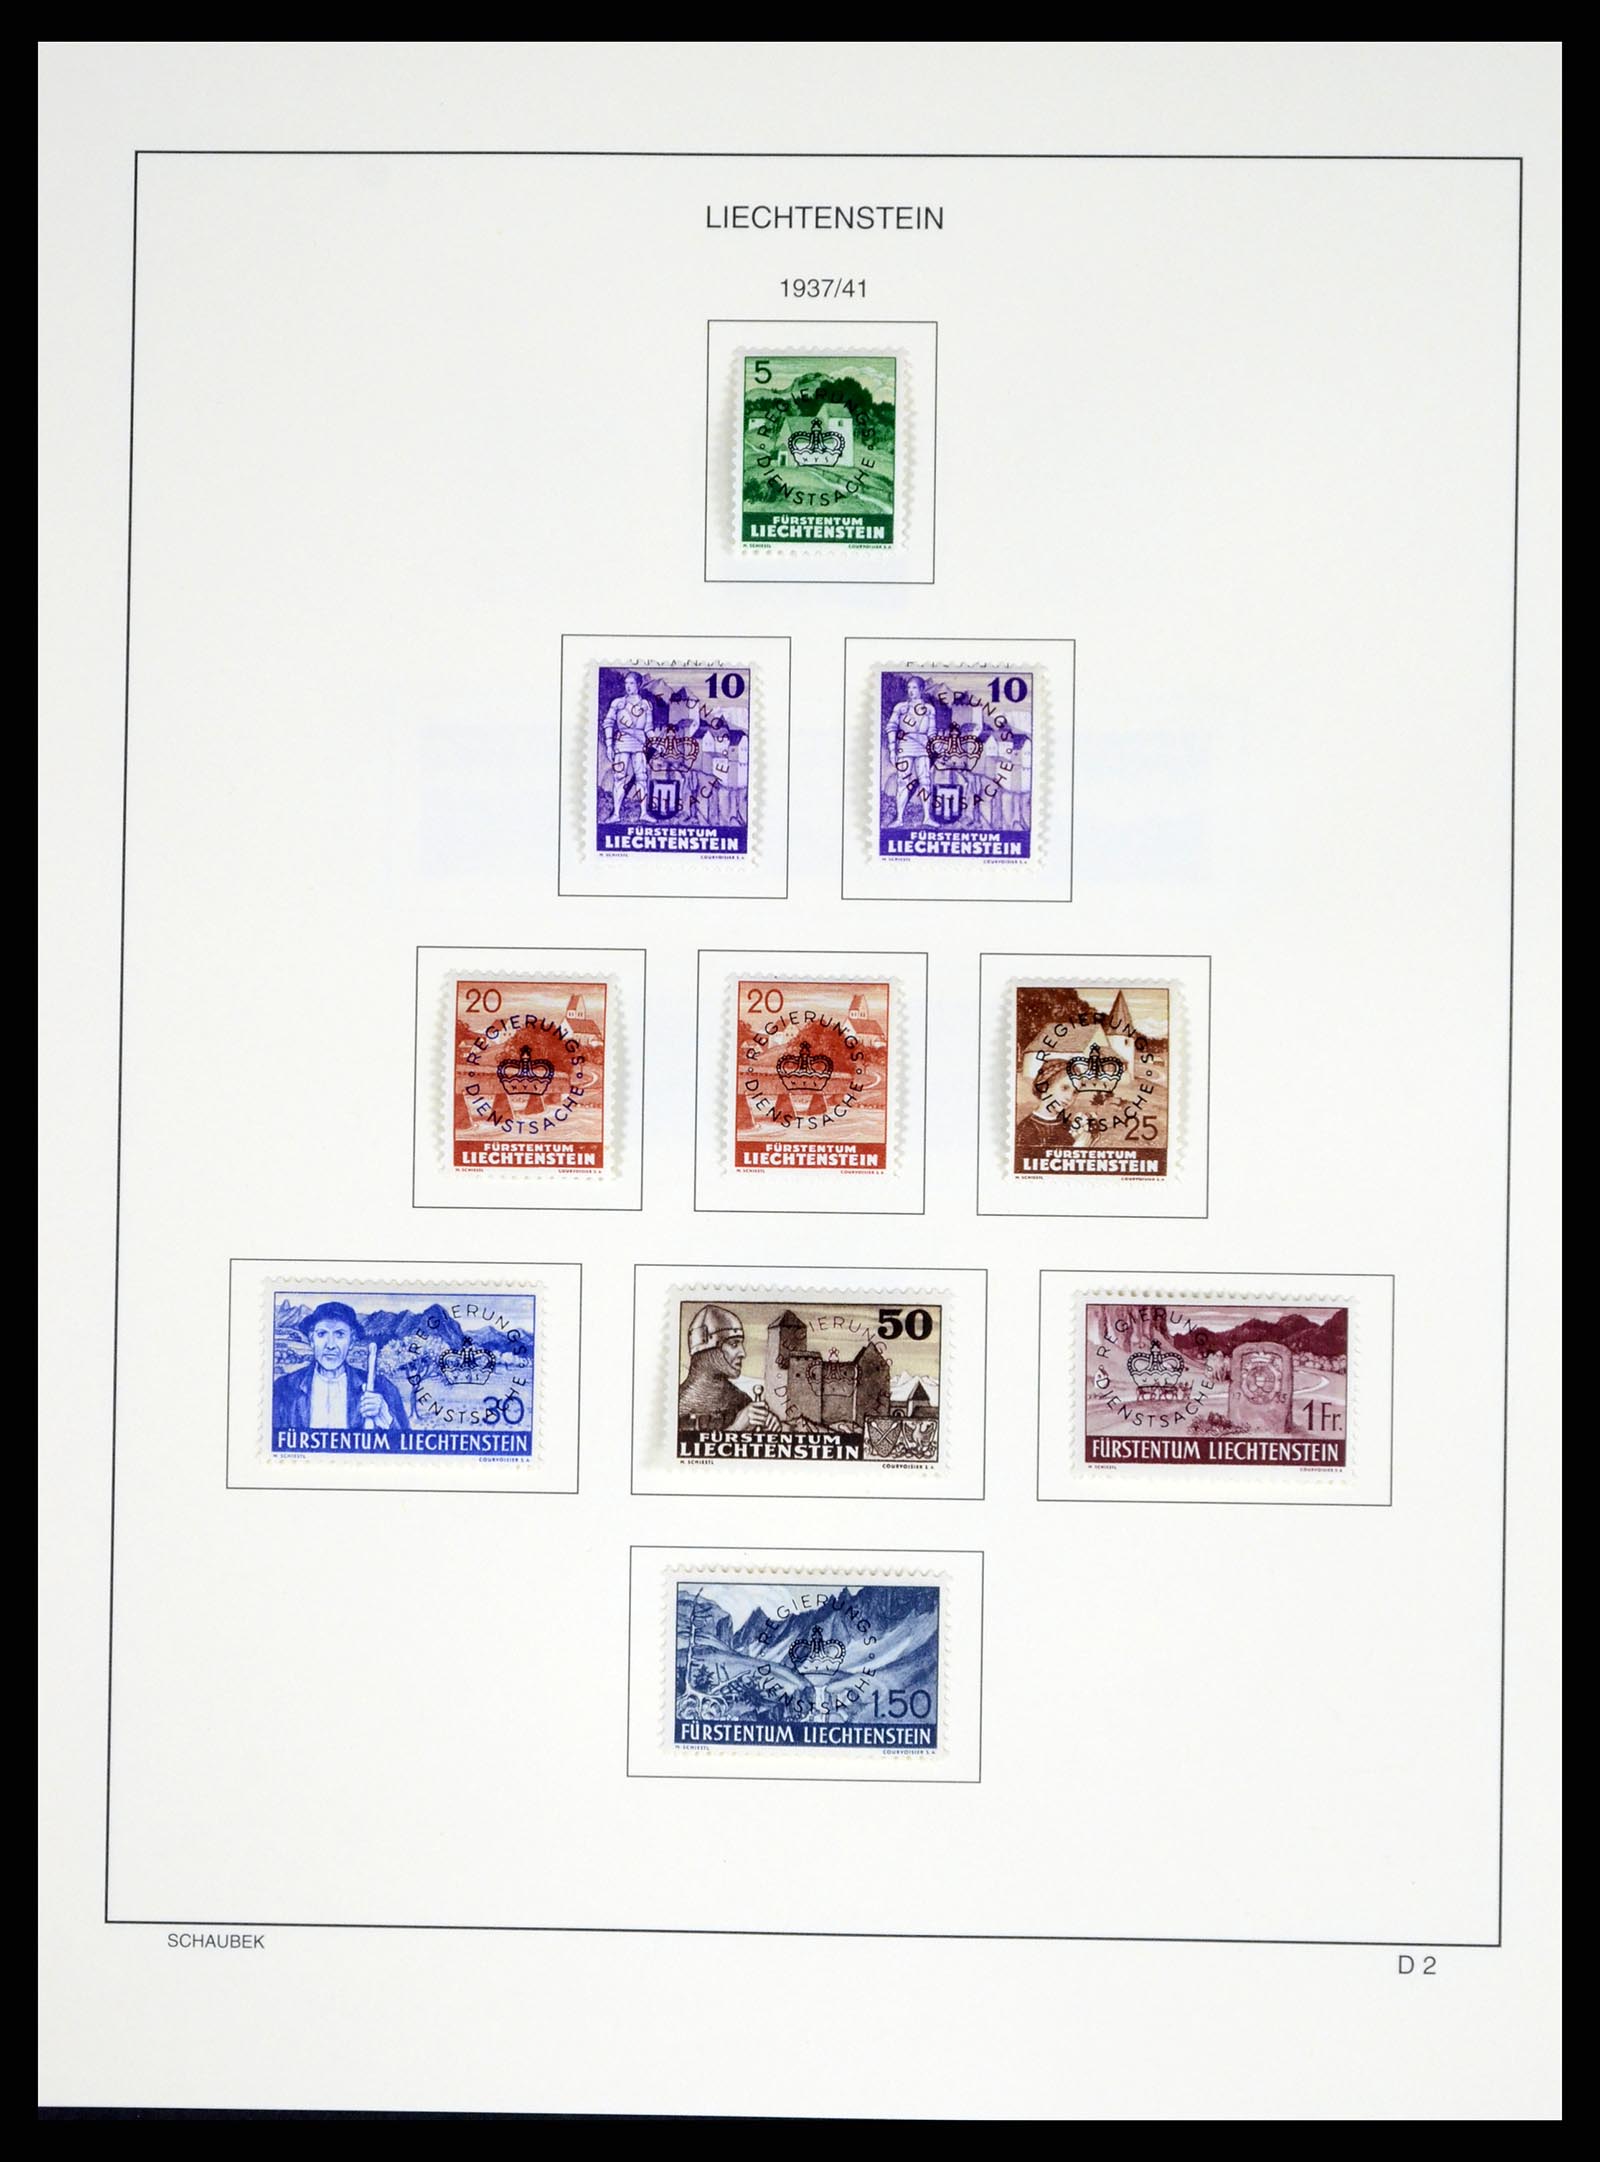 37547 183 - Stamp collection 37547 Liechtenstein 1912-2011.